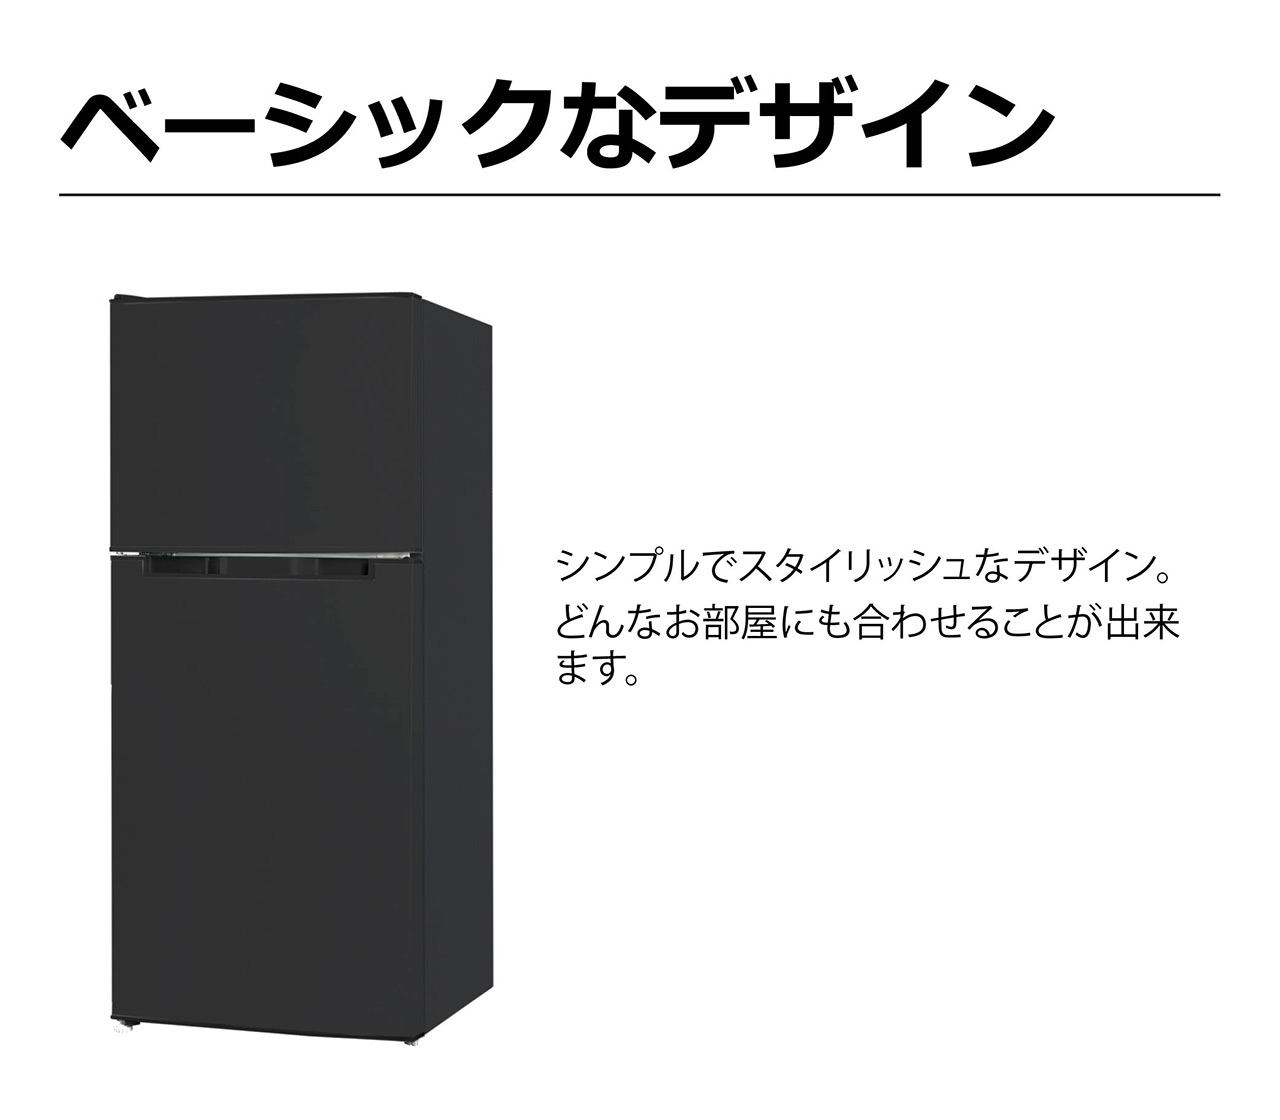 2ドア冷凍冷蔵庫 118L TH-118L2-BK : 製品一覧